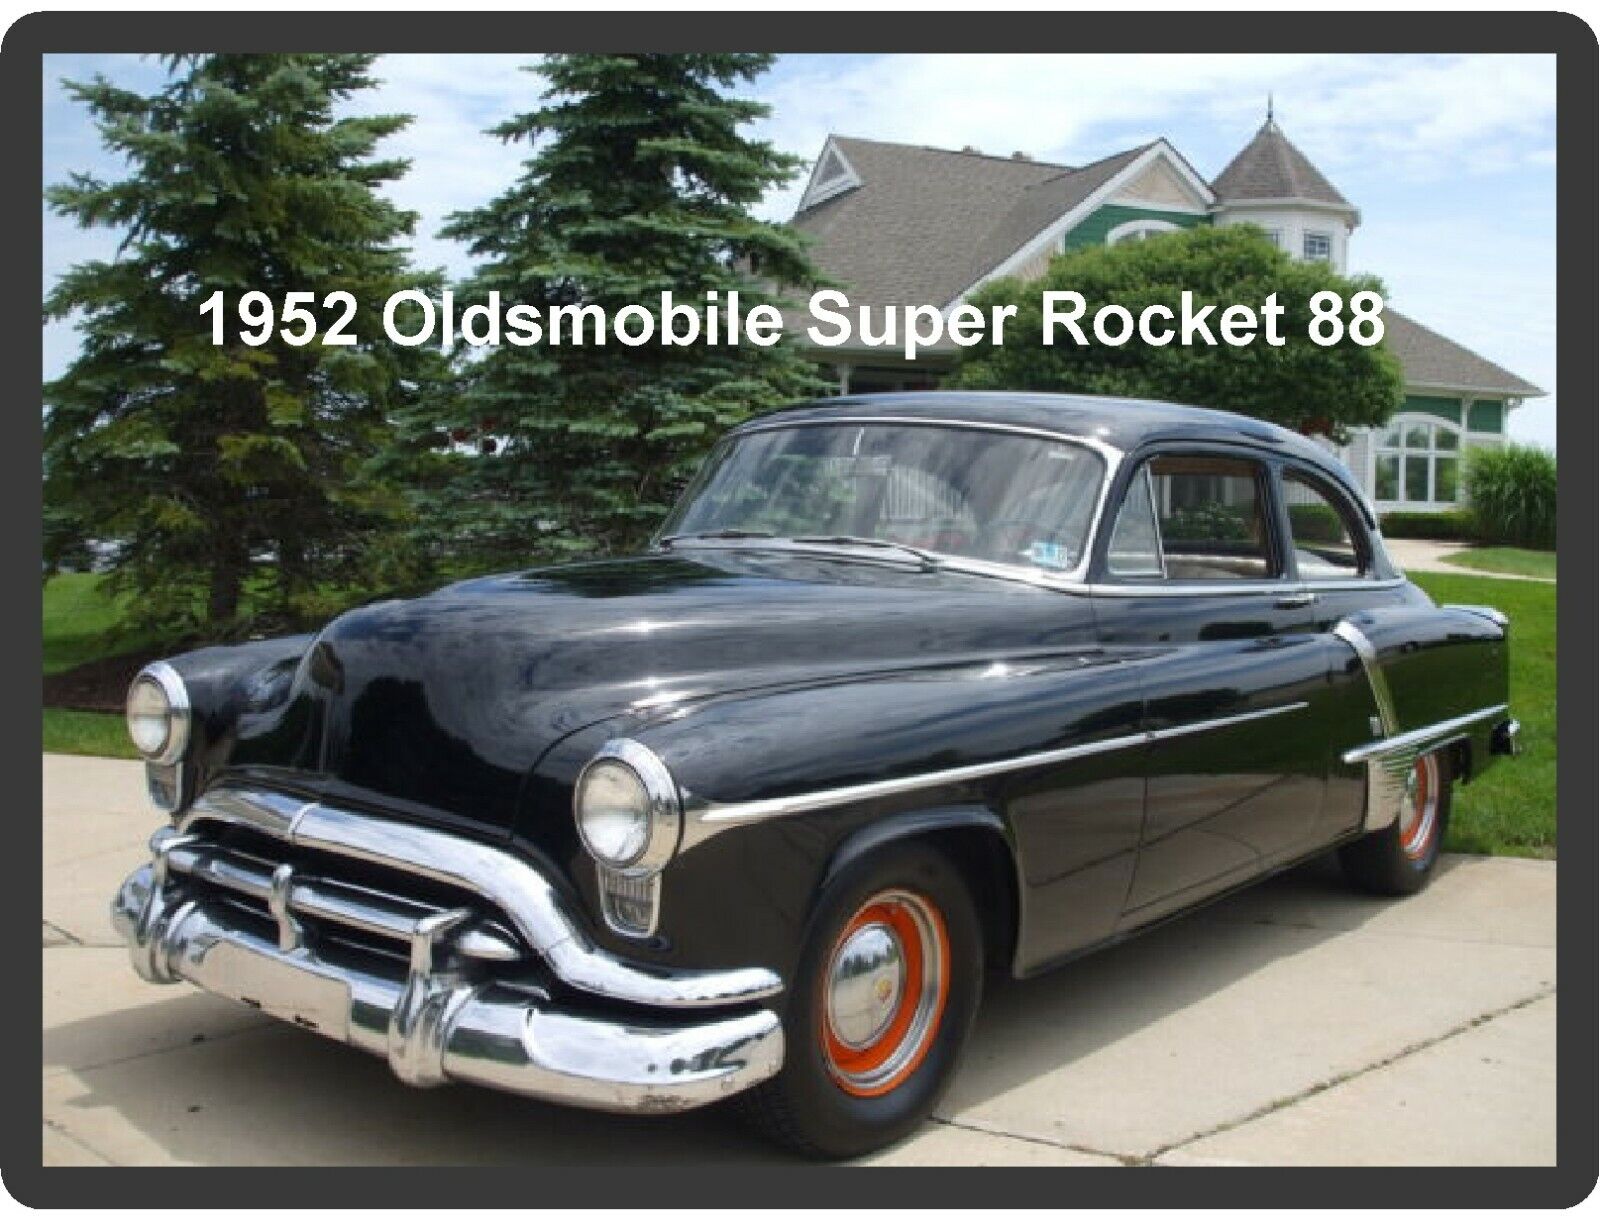 1952 Oldsmobile Super Rocket 88 Refrigerator / Tool Box Magnet